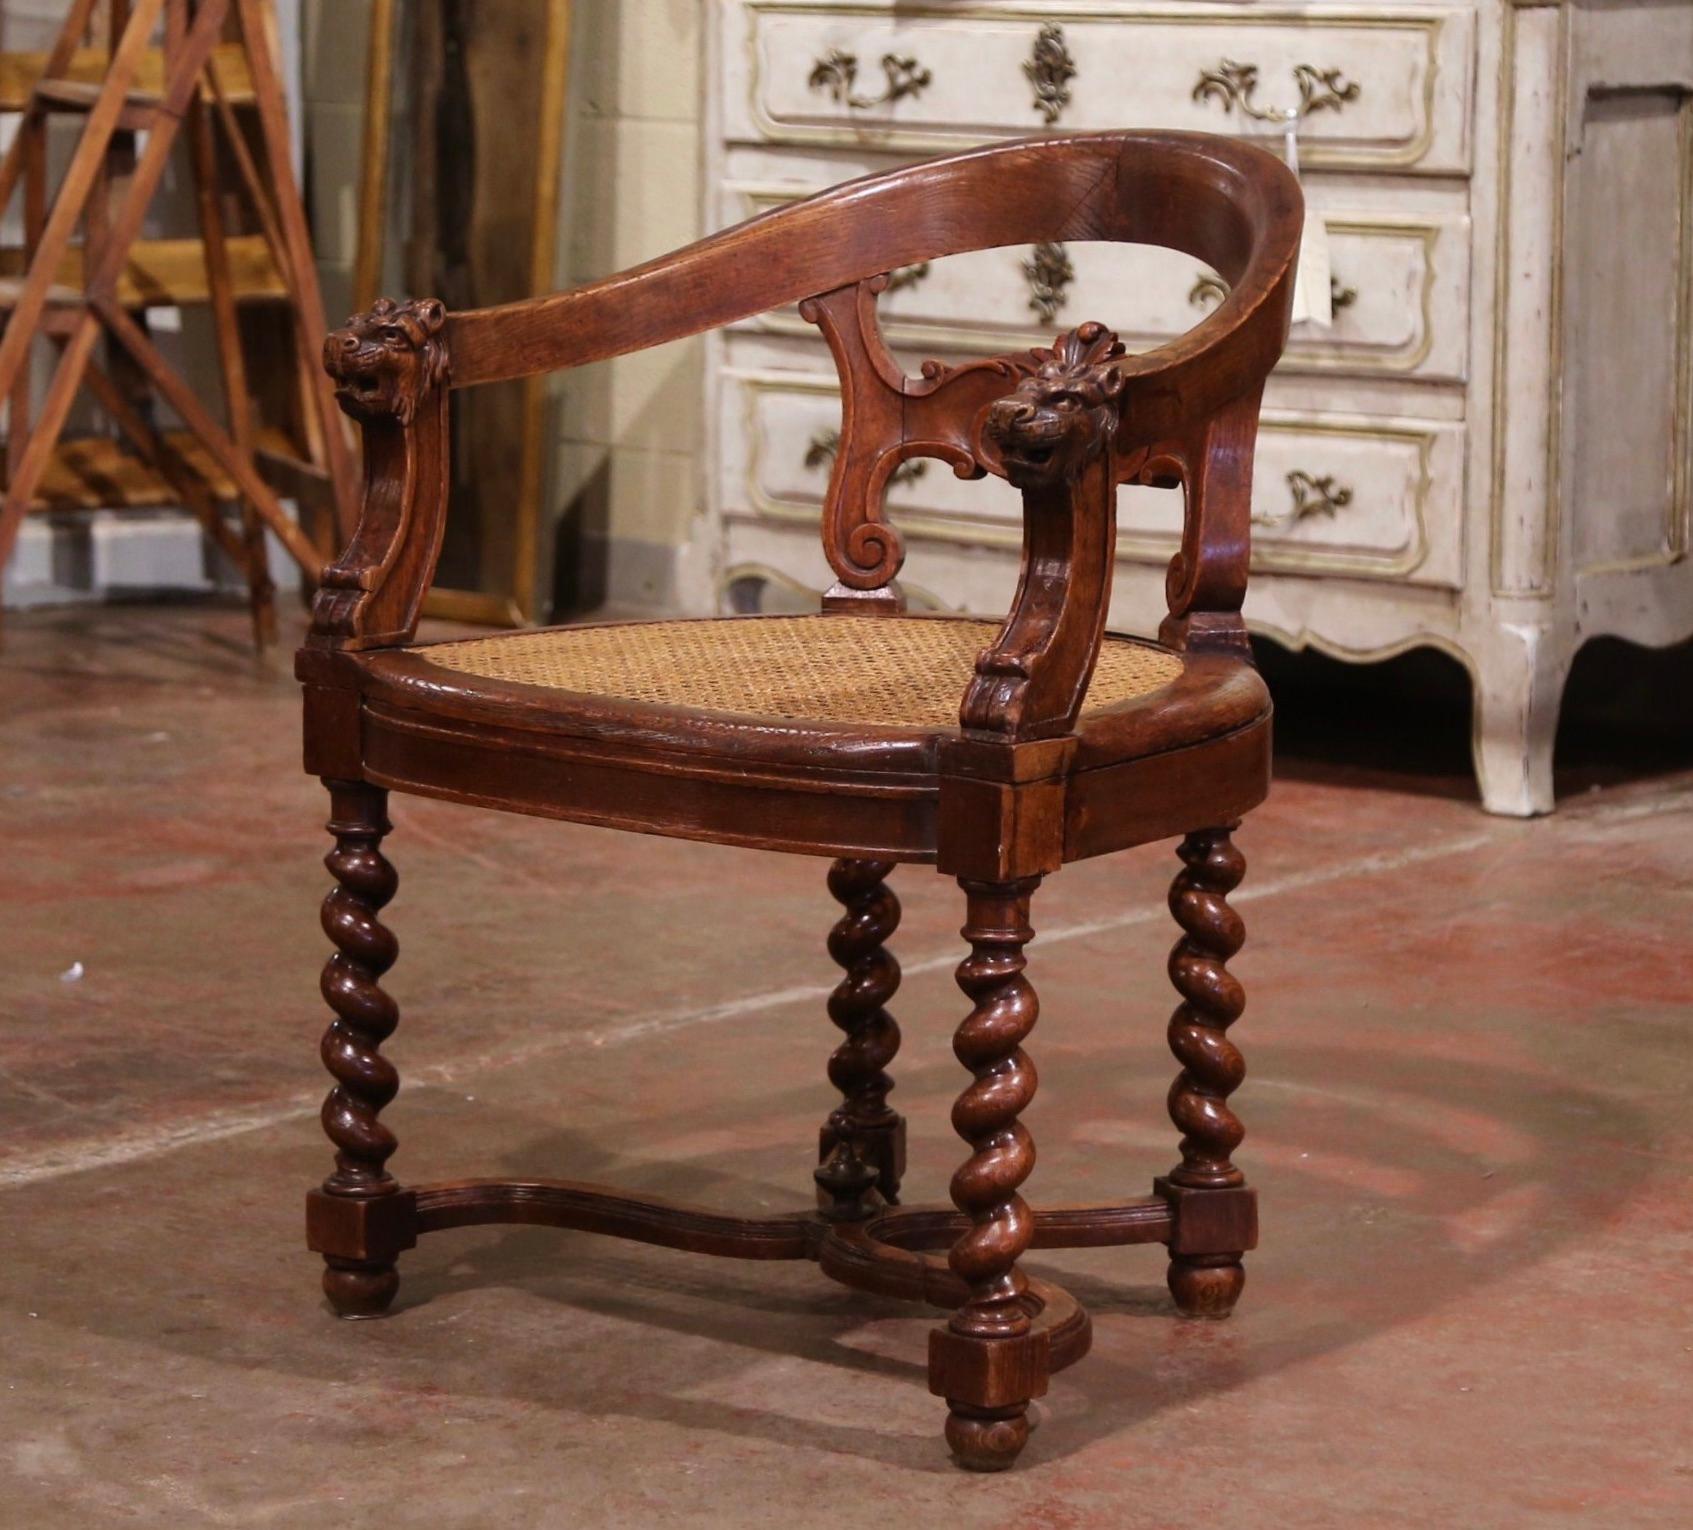 Dieser elegante antike Sessel wurde um 1880 in Frankreich hergestellt. Der aus Eichenholz gefertigte Sessel steht auf gedrechselten Beinen, die mit einem verschnörkelten 